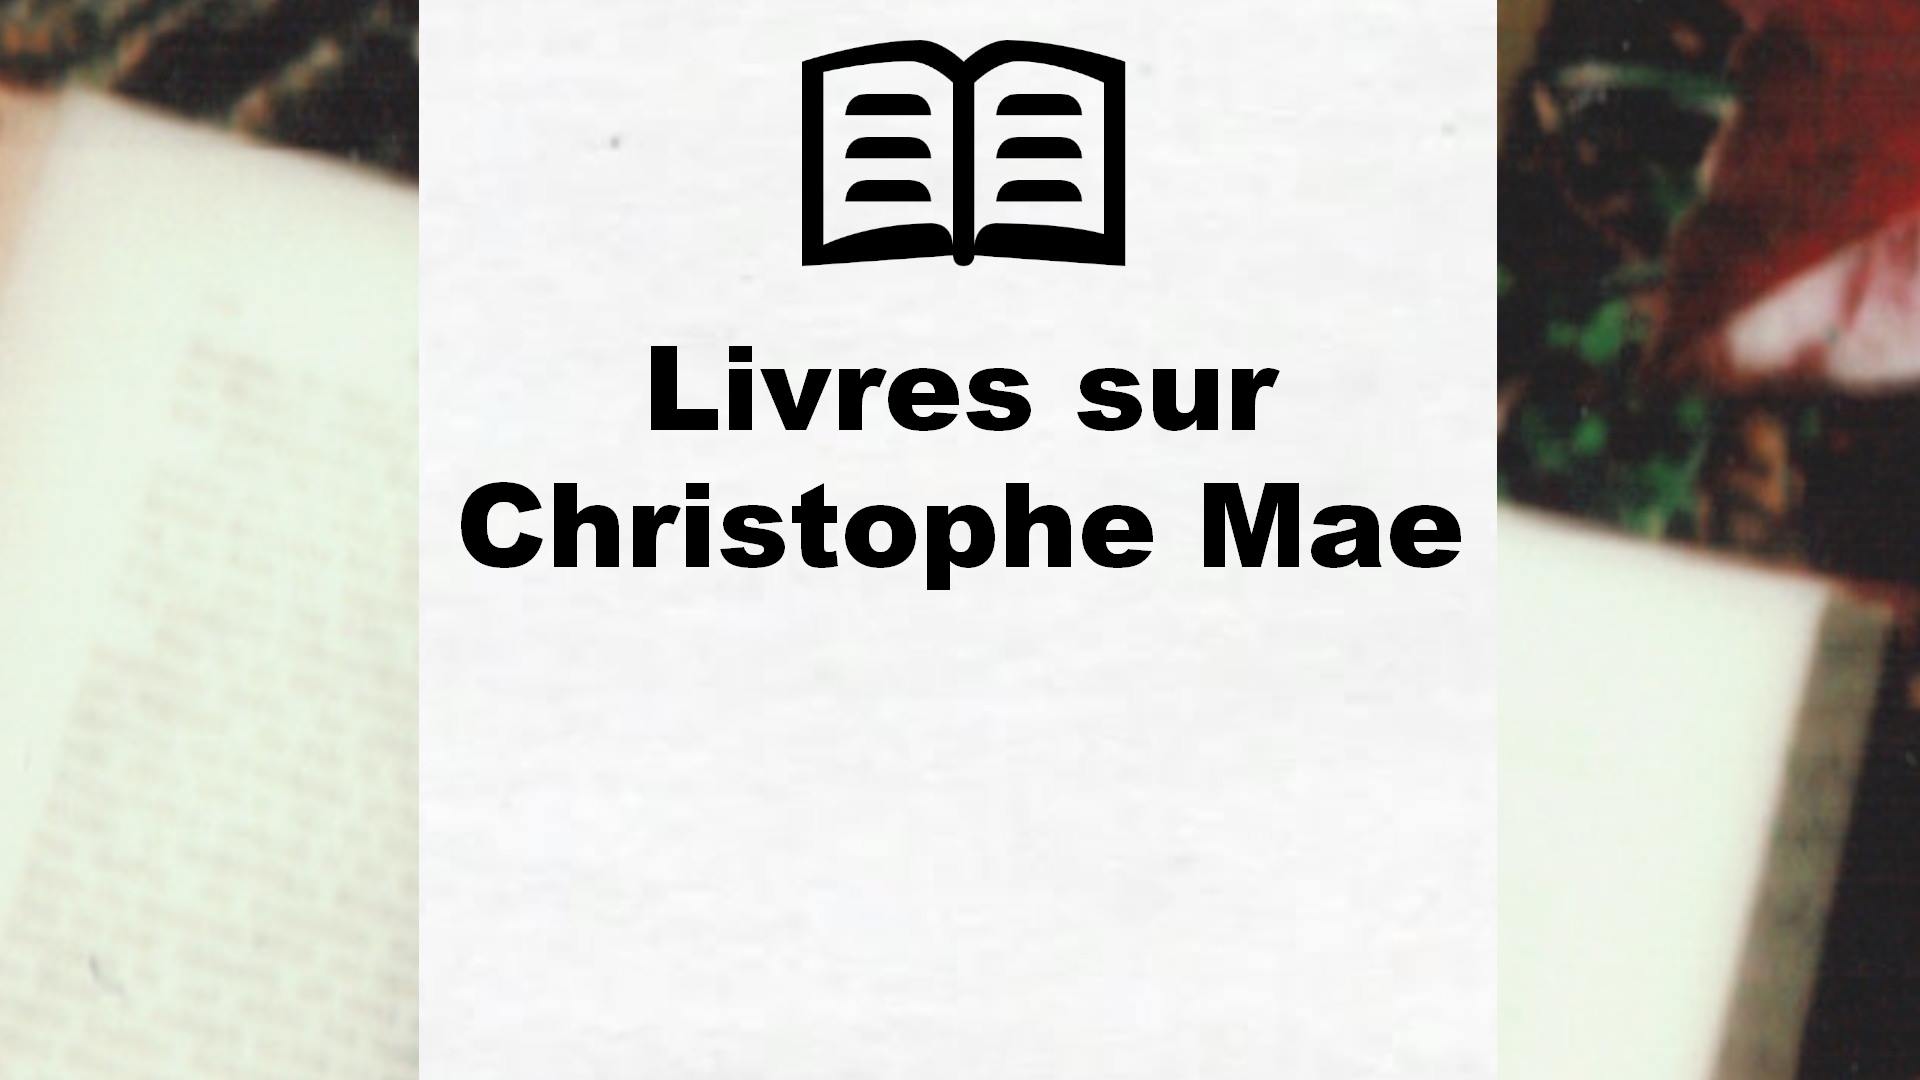 Livres sur Christophe Mae